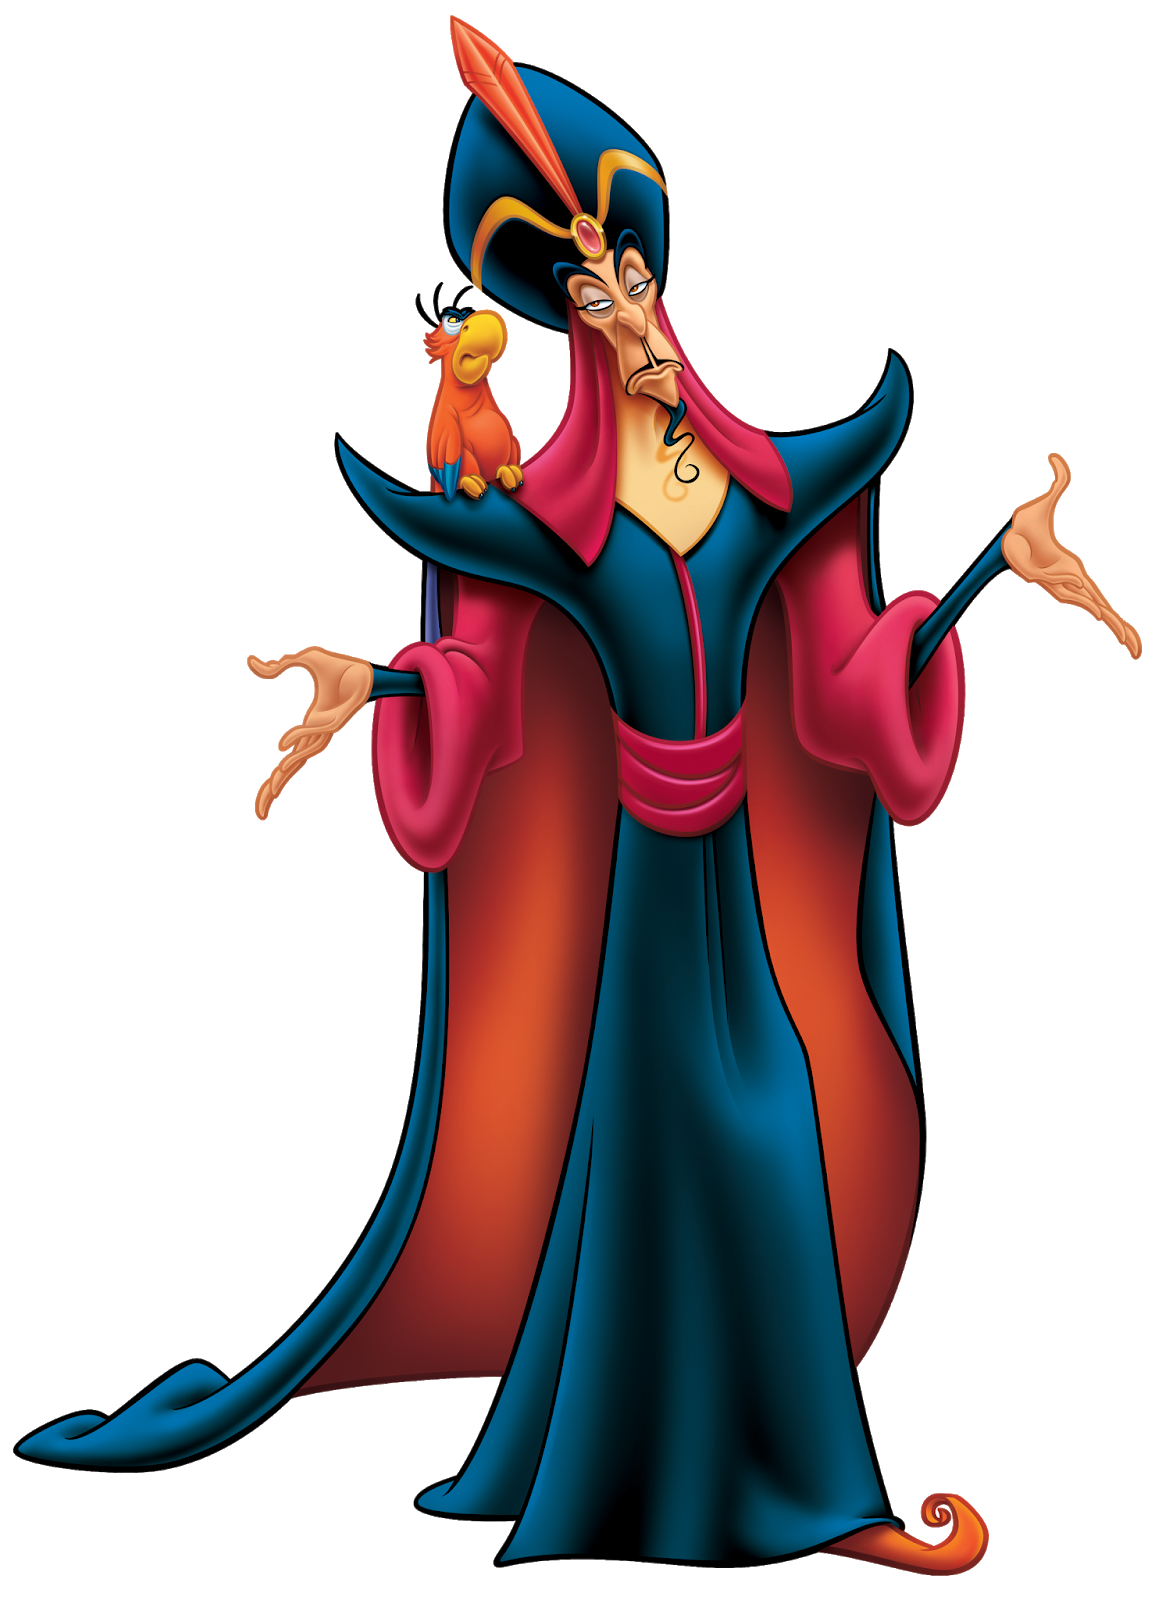 Jafar - Wikipedia